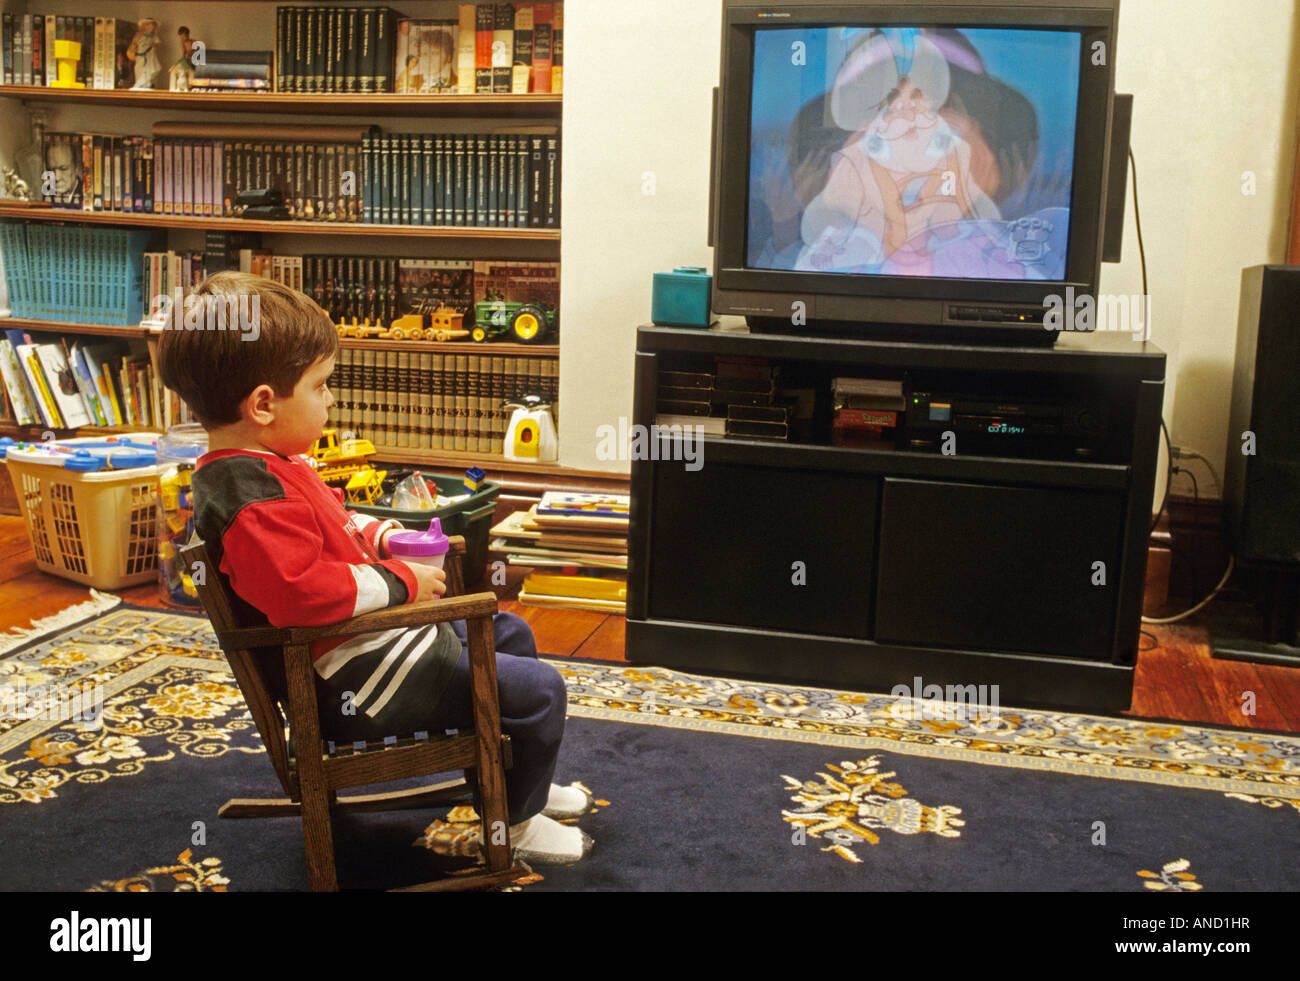 Bambino di due anni a guardare la televisione tv cartoons sippy Cup e la sedia a dondolo giocattoli Foto Stock